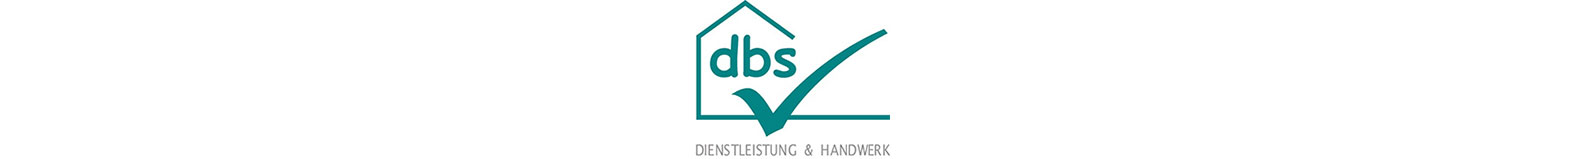 dbs-Der bessere Service Logo